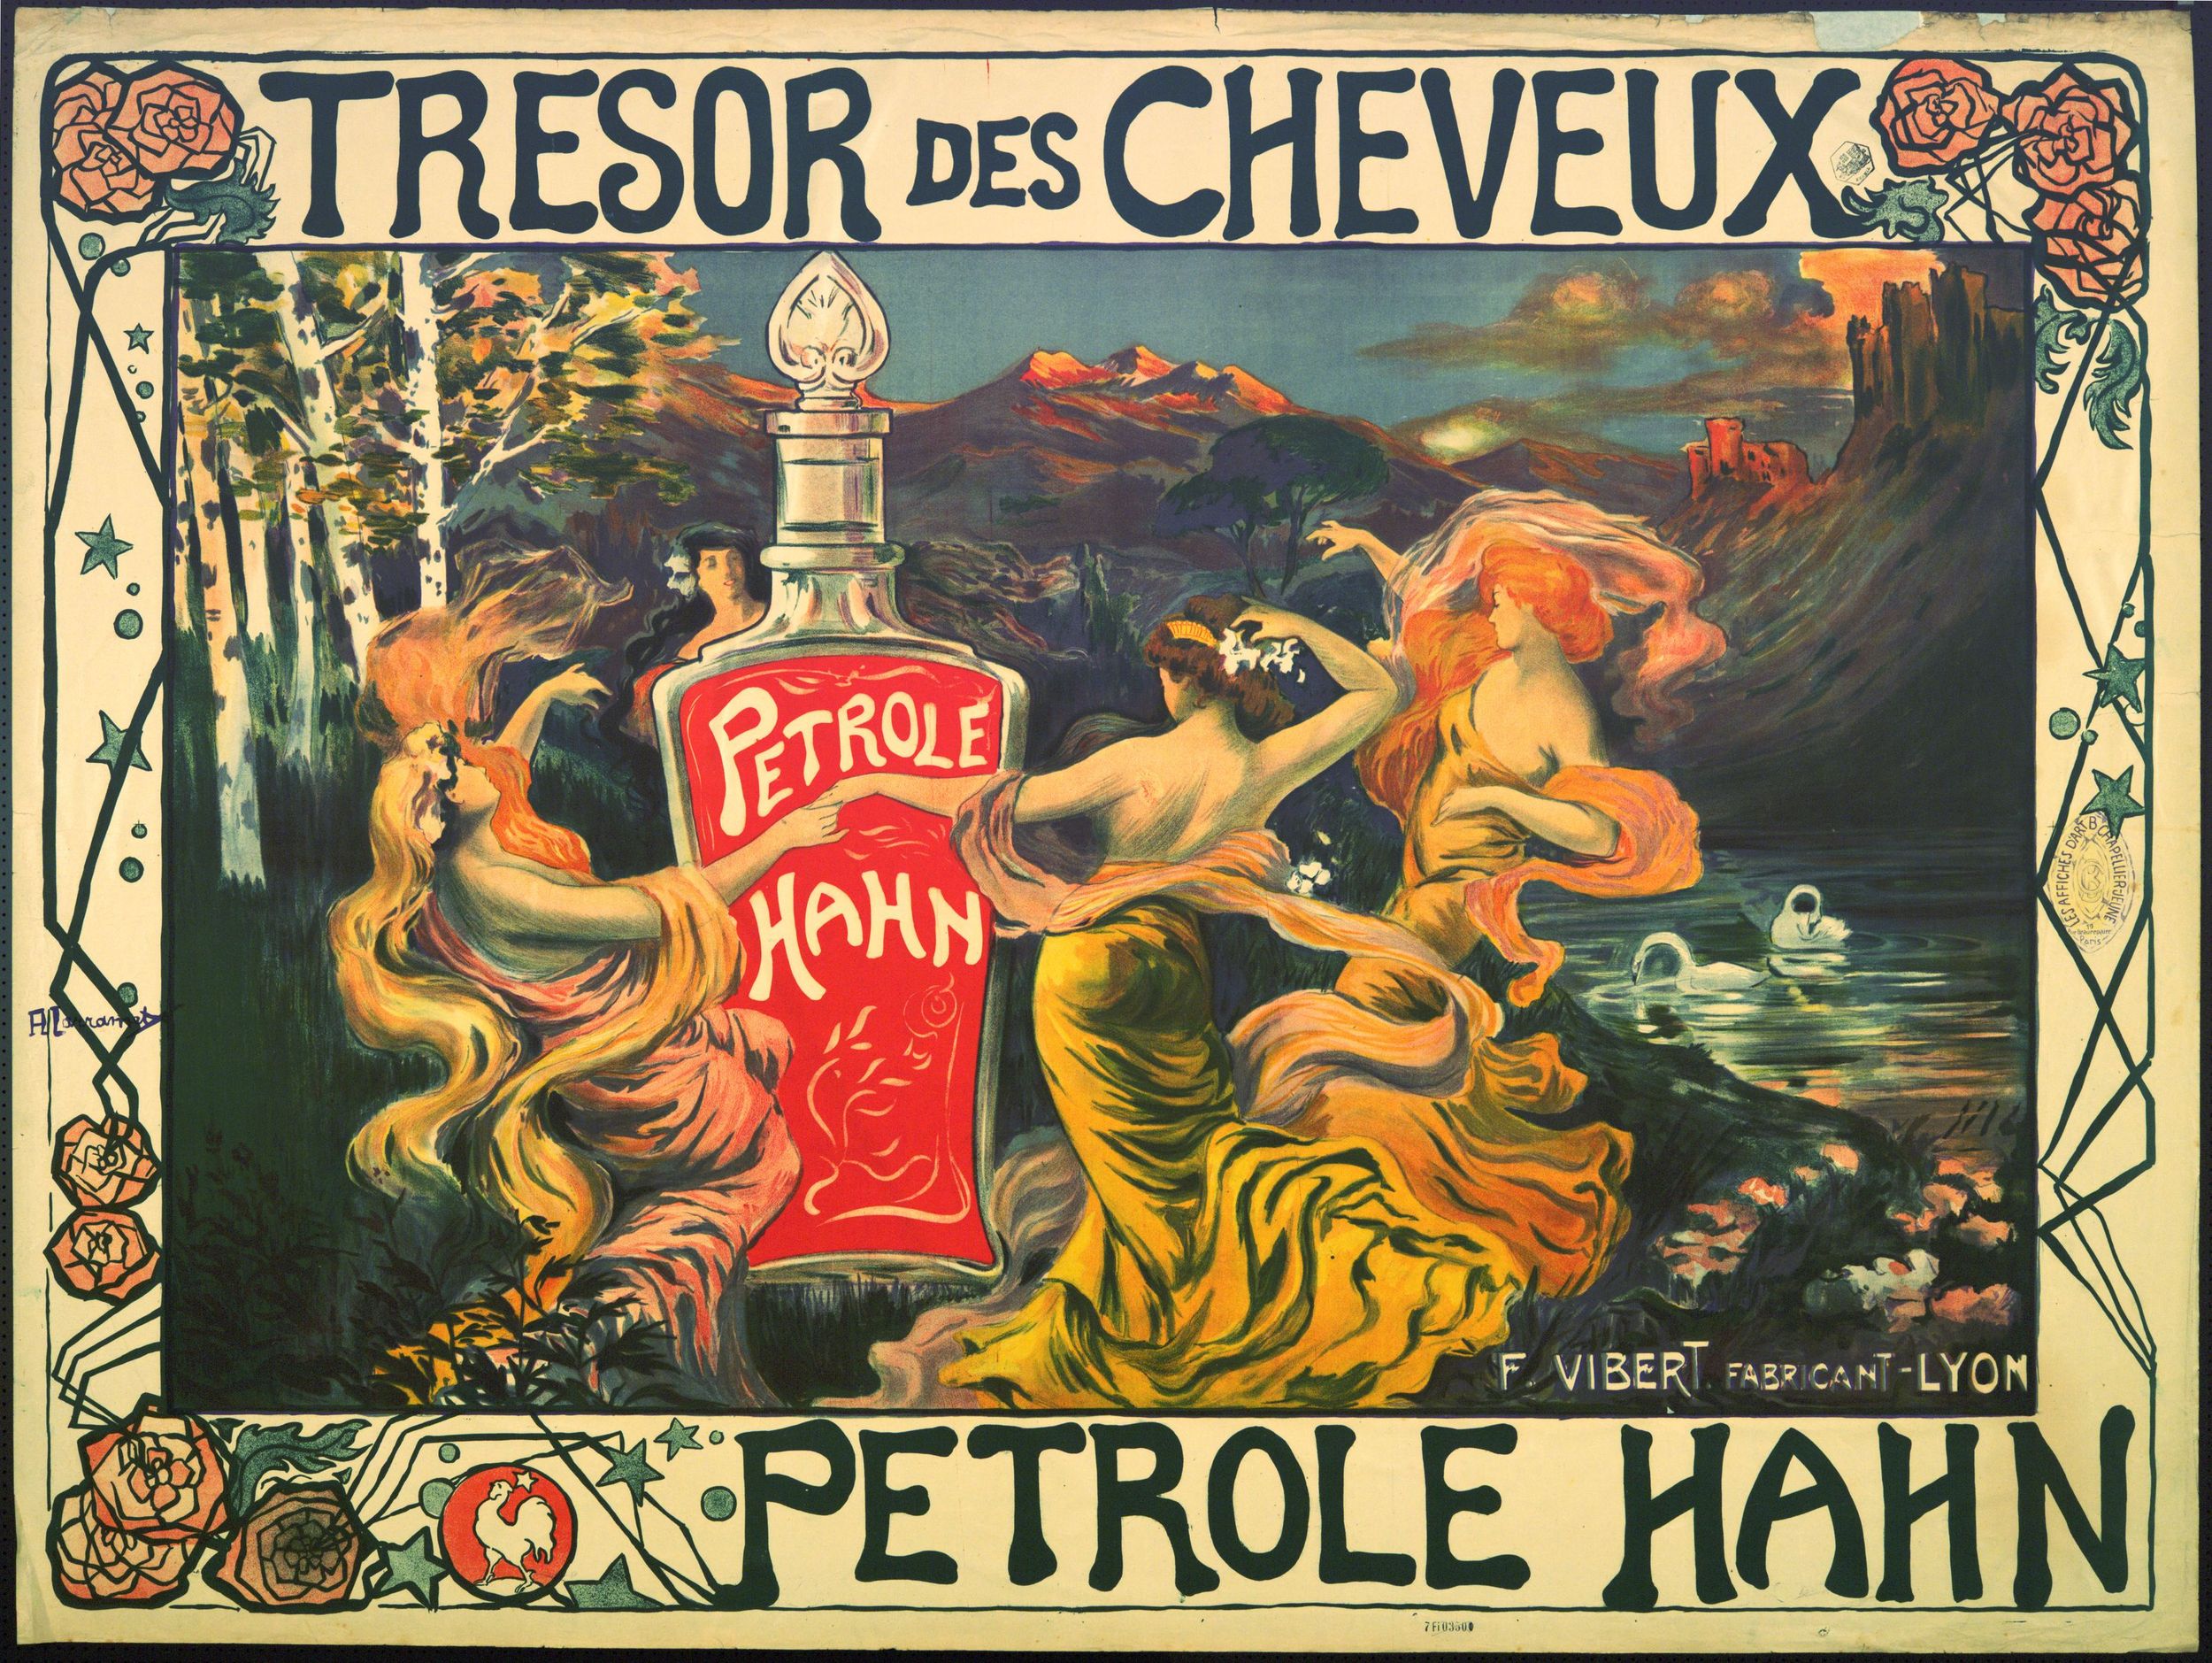 « Pétrole Hahn, Trésor des cheveux » : affiche publicitaire couleur très grand format (1905-1920, cote : 7FI/3346)